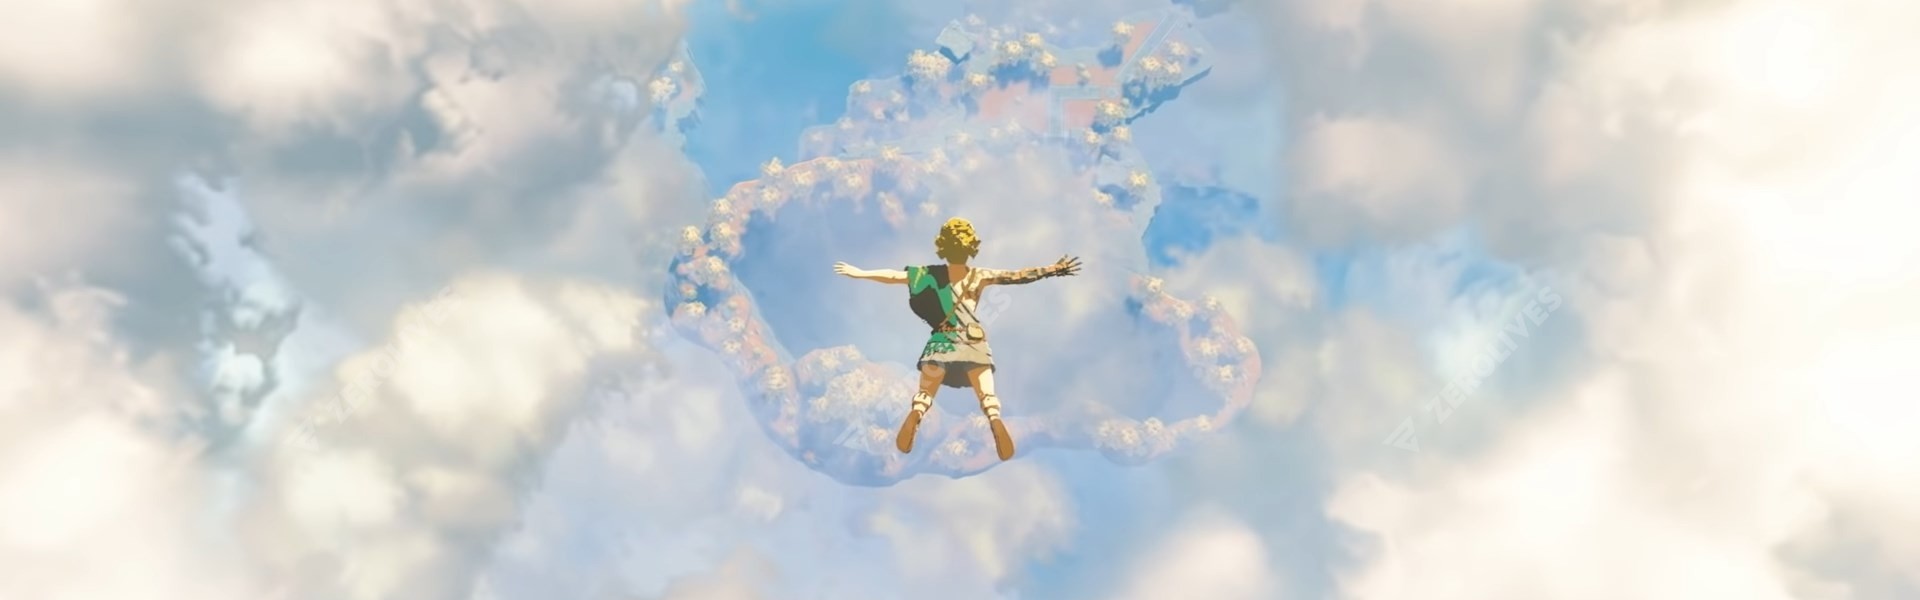 The Legend of Zelda: Breath of the Wild sequel